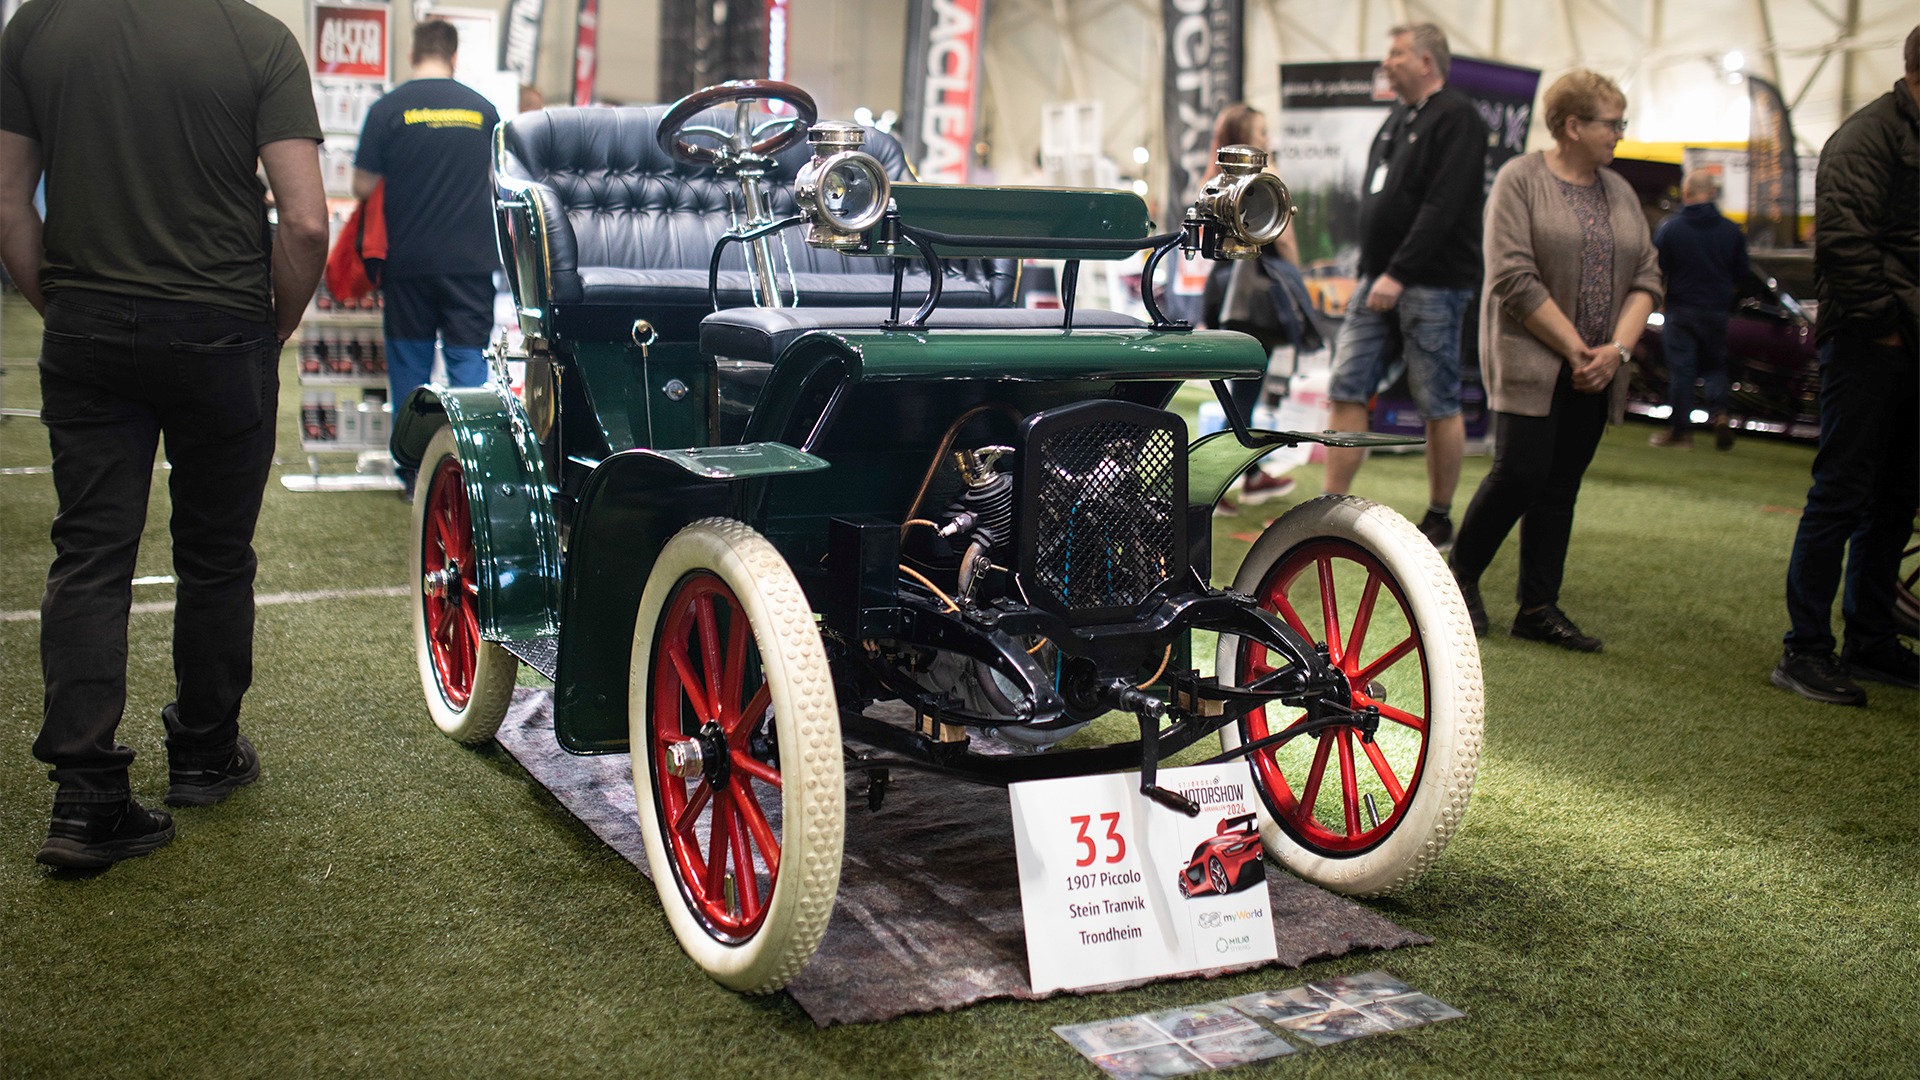 Omtrent fra bilens spede begynnelse. Nydelig restaurert 1907 Piccolo. Også det eneste eksemplaret her i landet.